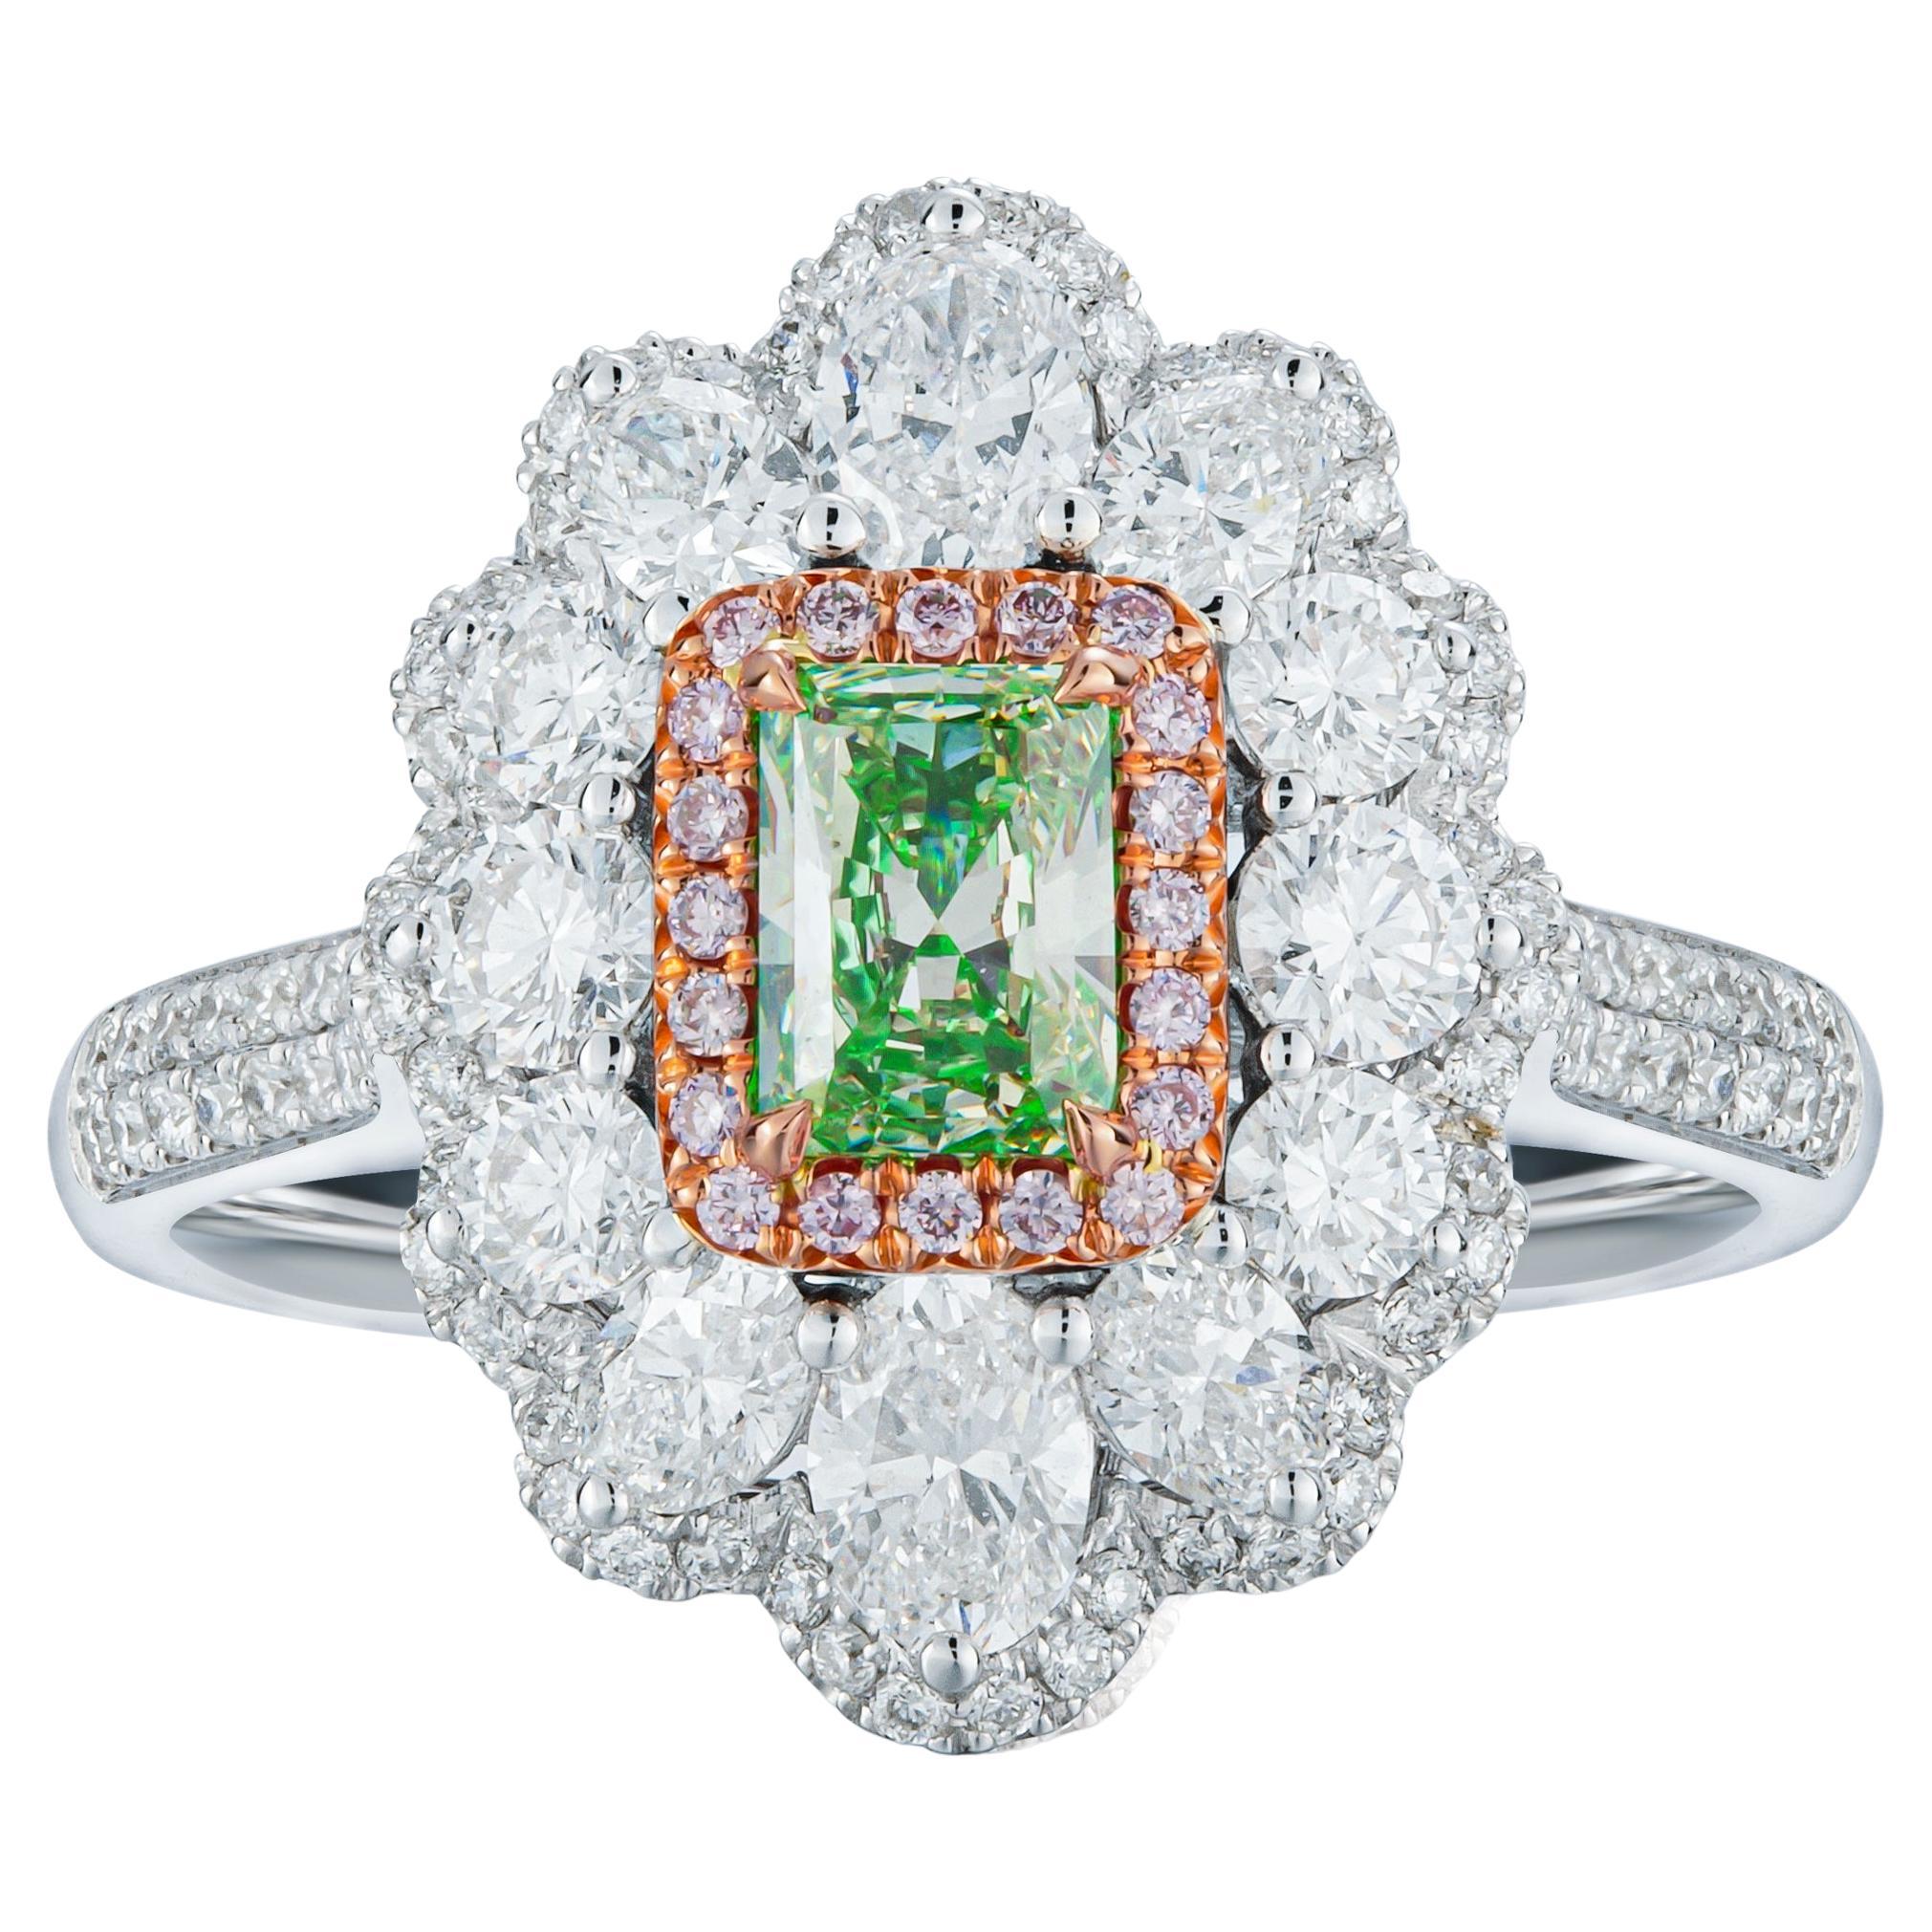  Bague 18 carats avec diamant vert jaune clair fantaisie naturel de 0,62 carat certifié par le GIA